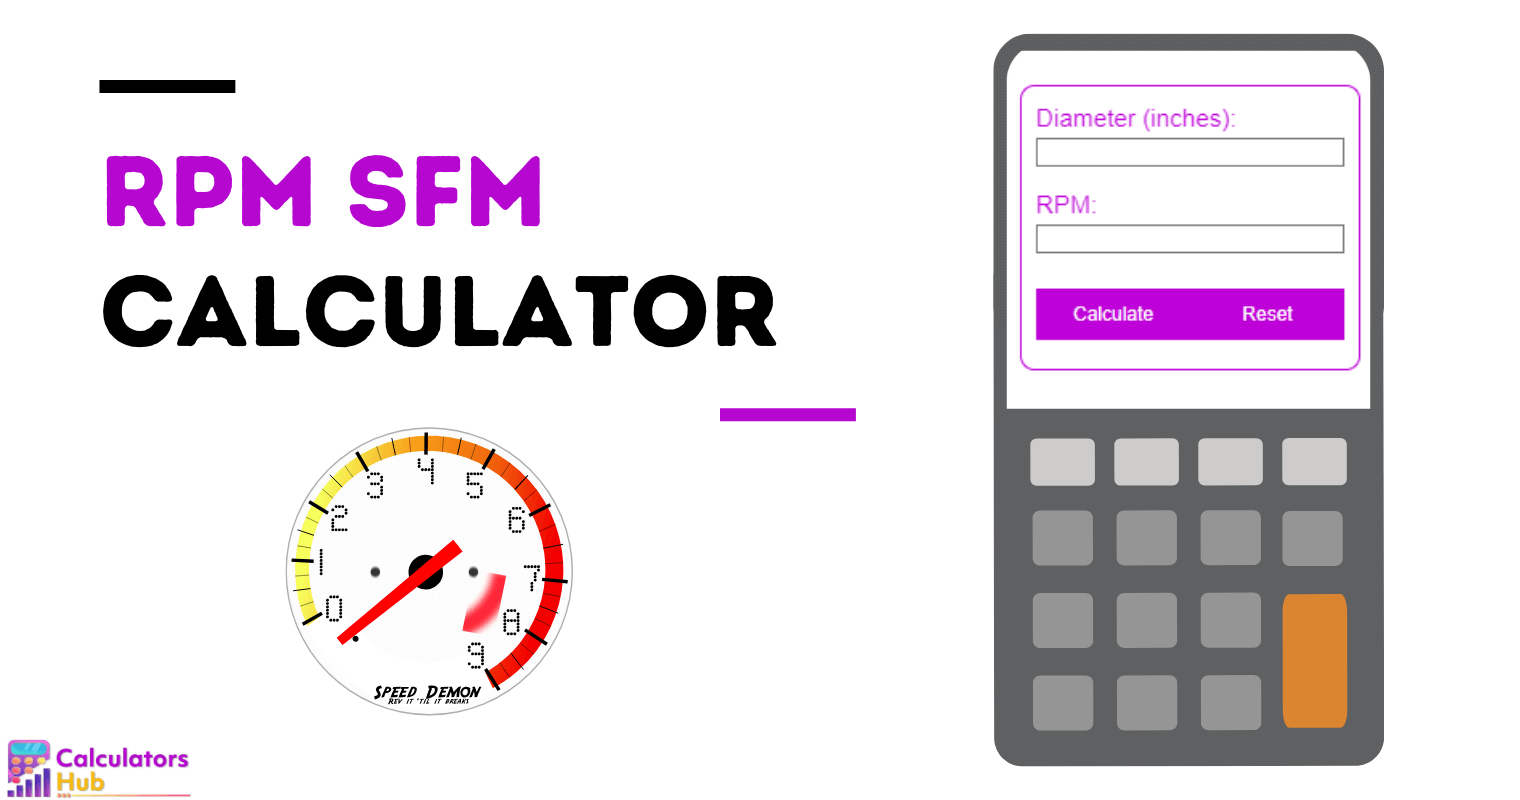 RPM SFM Calculator